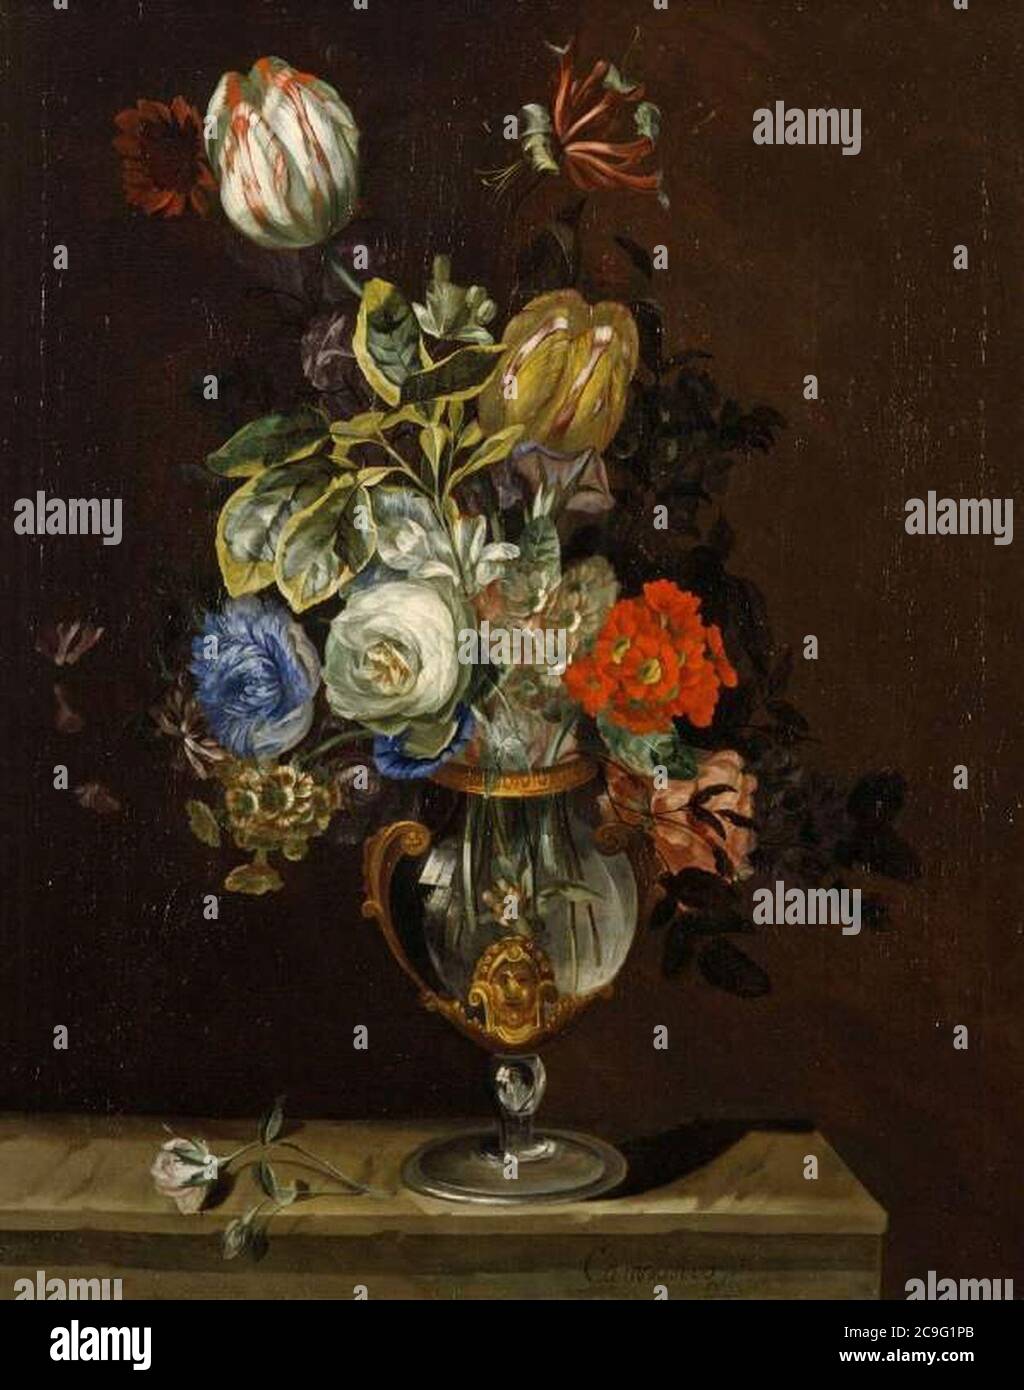 Jacob Campo Weyerman - Bouqet de fleurs dans un vase en verre Banque D'Images